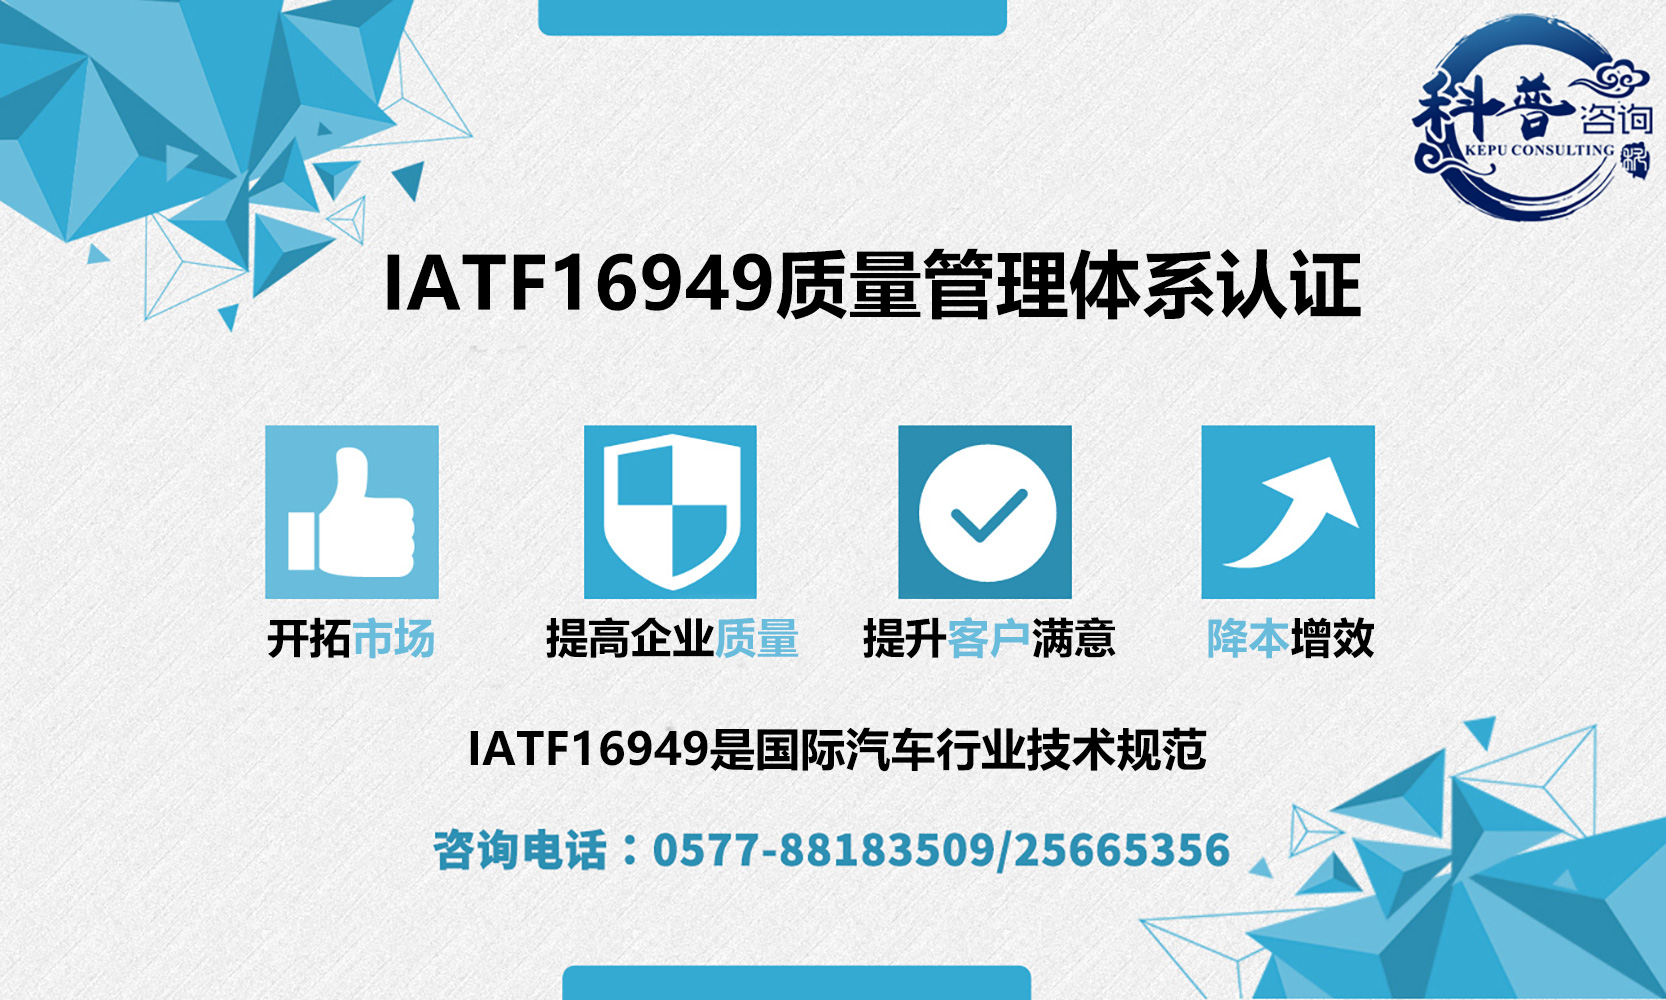 企业为什么要做IATF16949认证以及需要什么条件？